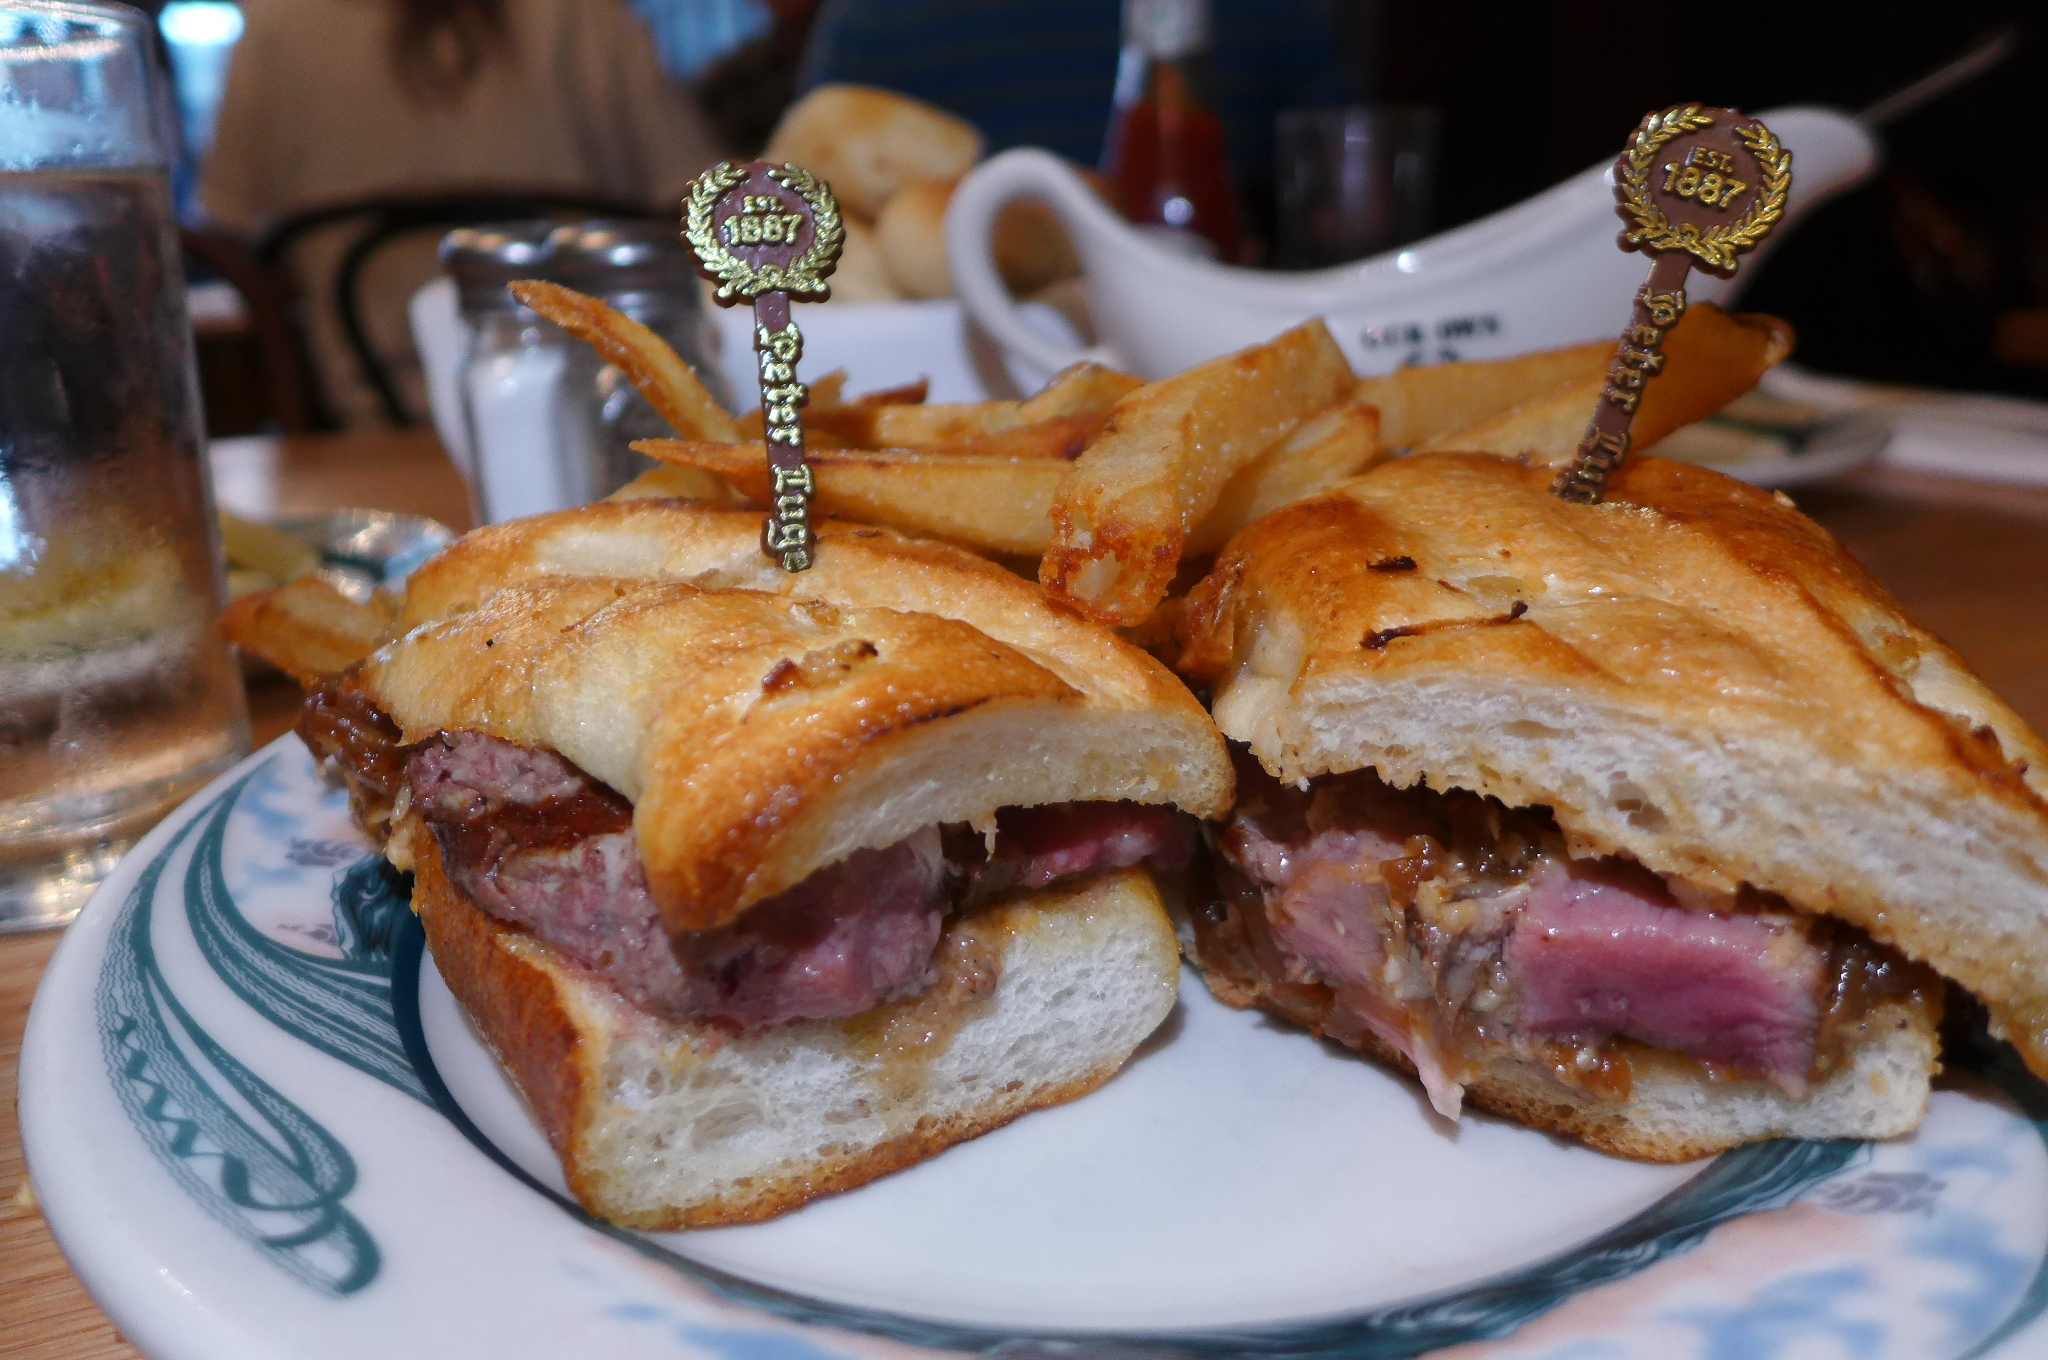 A steak sandwich on a baguette.